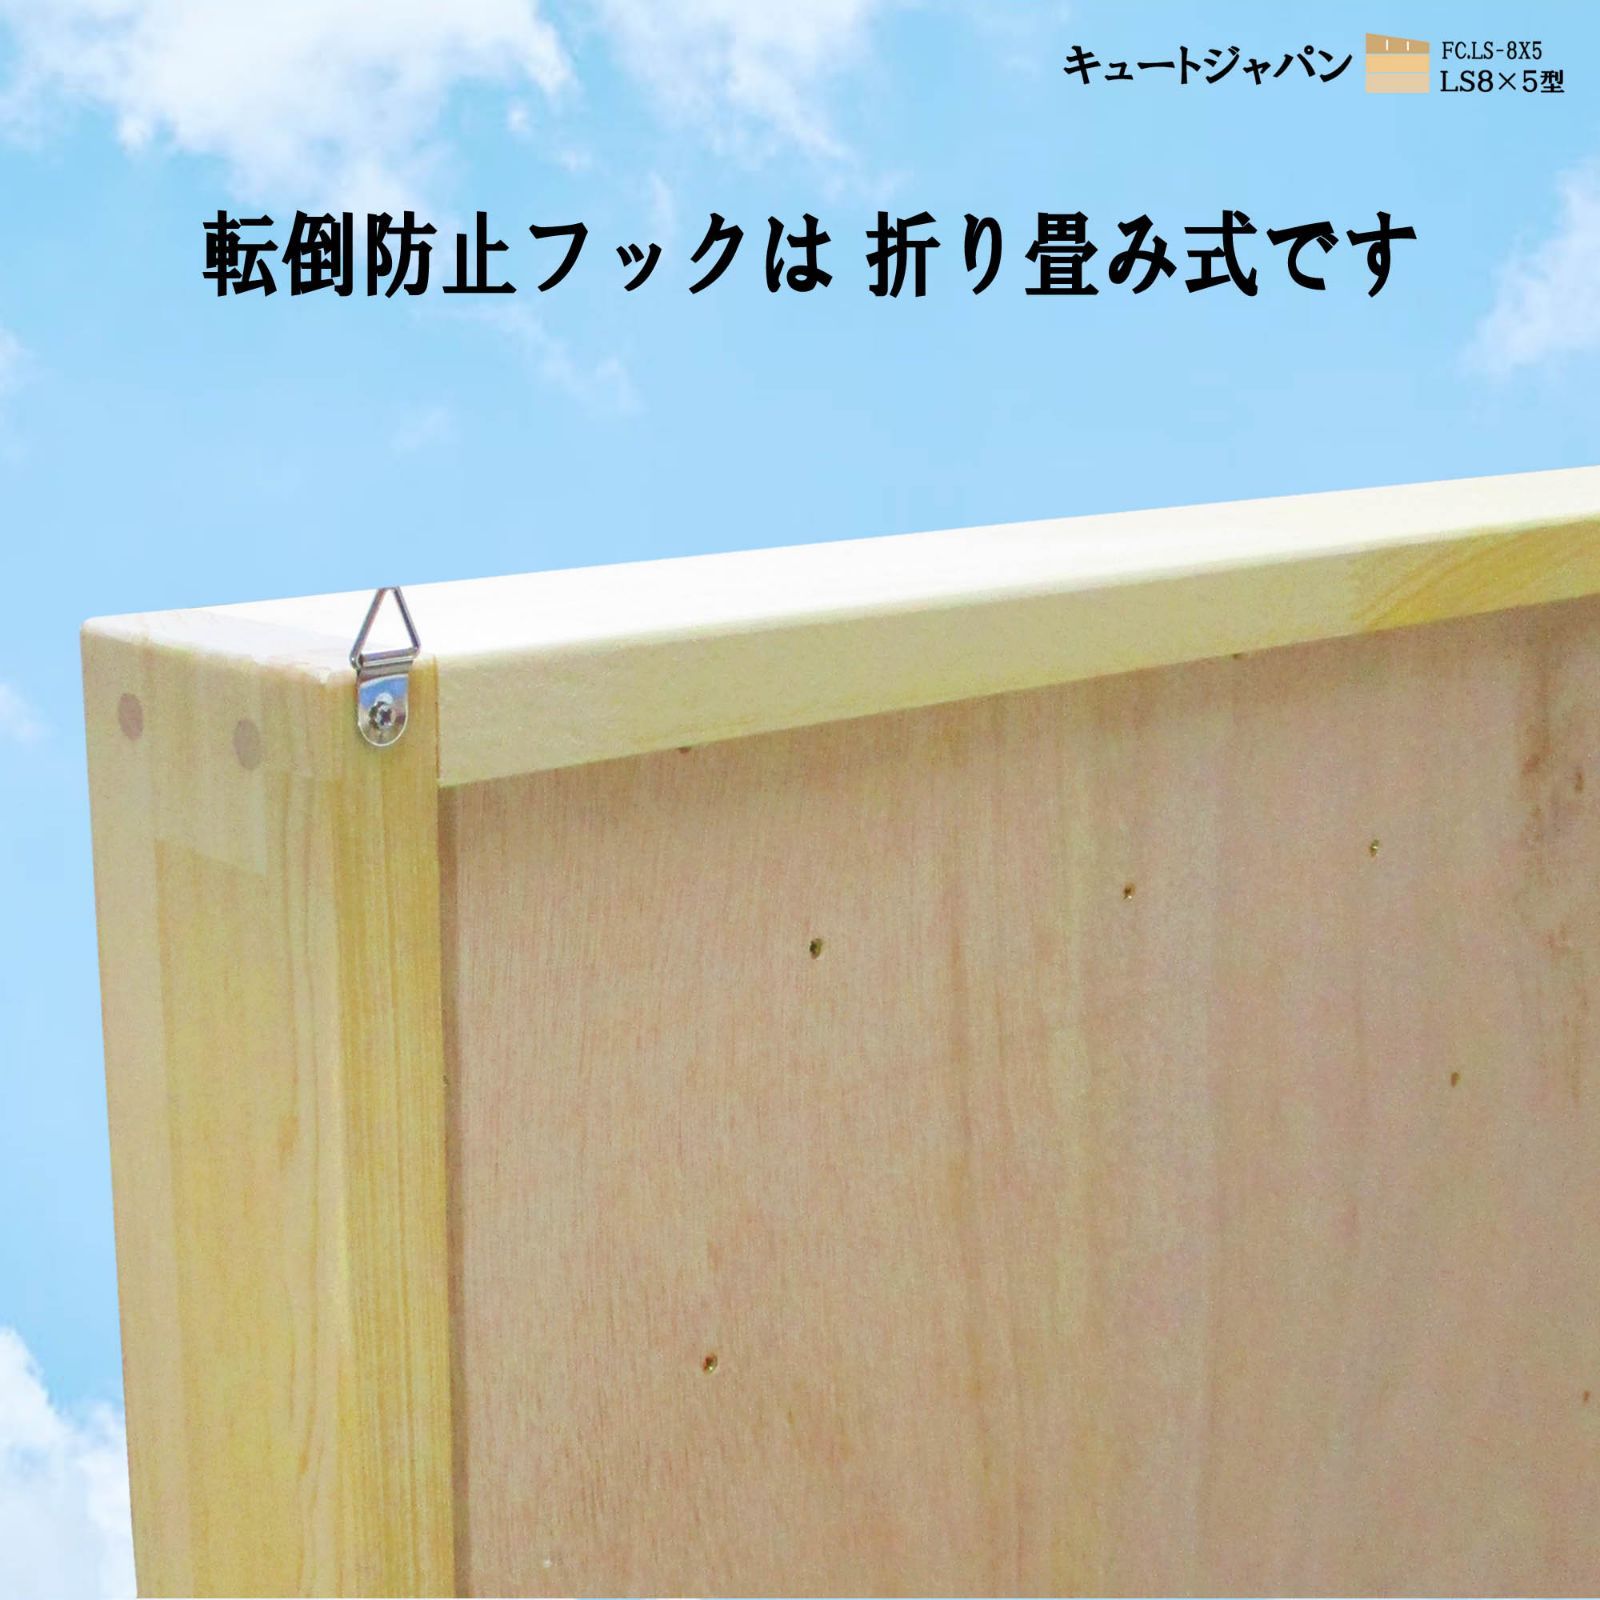 シーグラスアート コレクション収納 アクリルスライド障子(８×５マス) 日本製